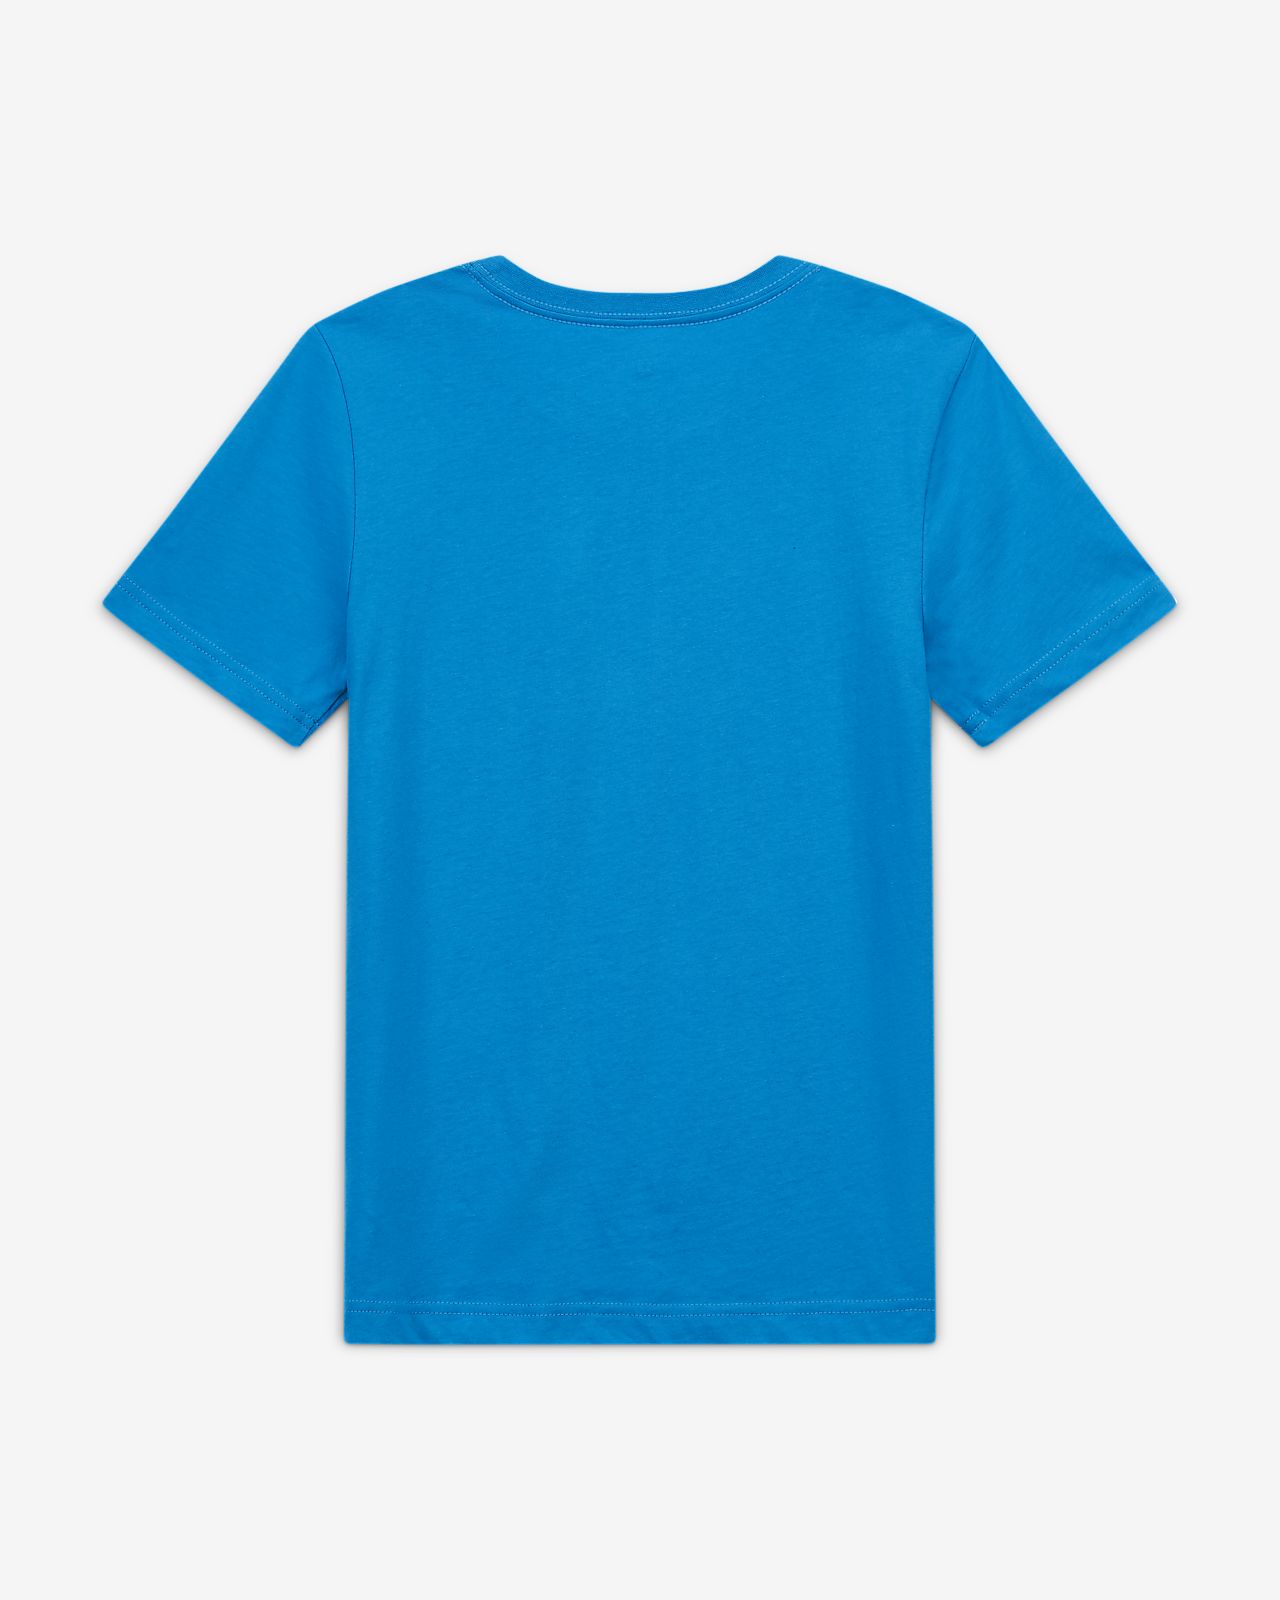 turquoise jordan shirt